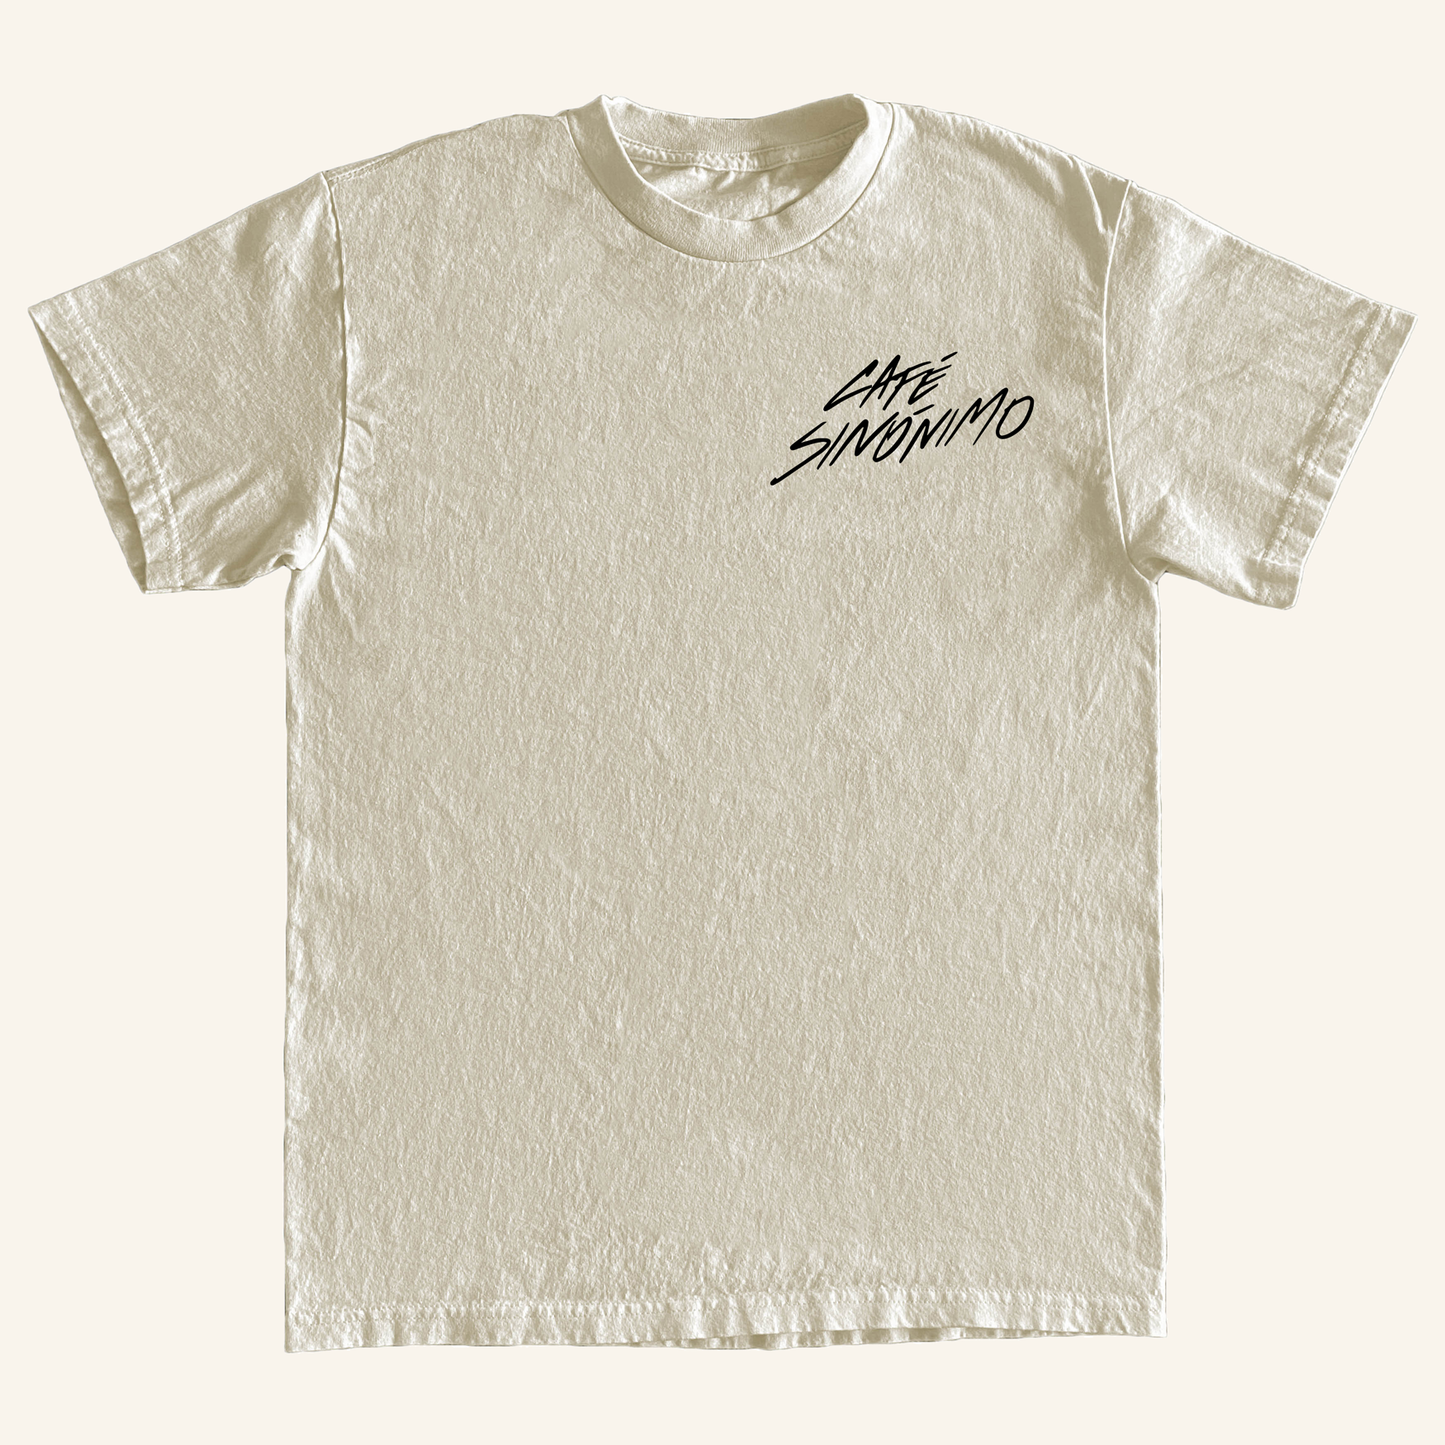 "Pásala Suave" T-Shirt